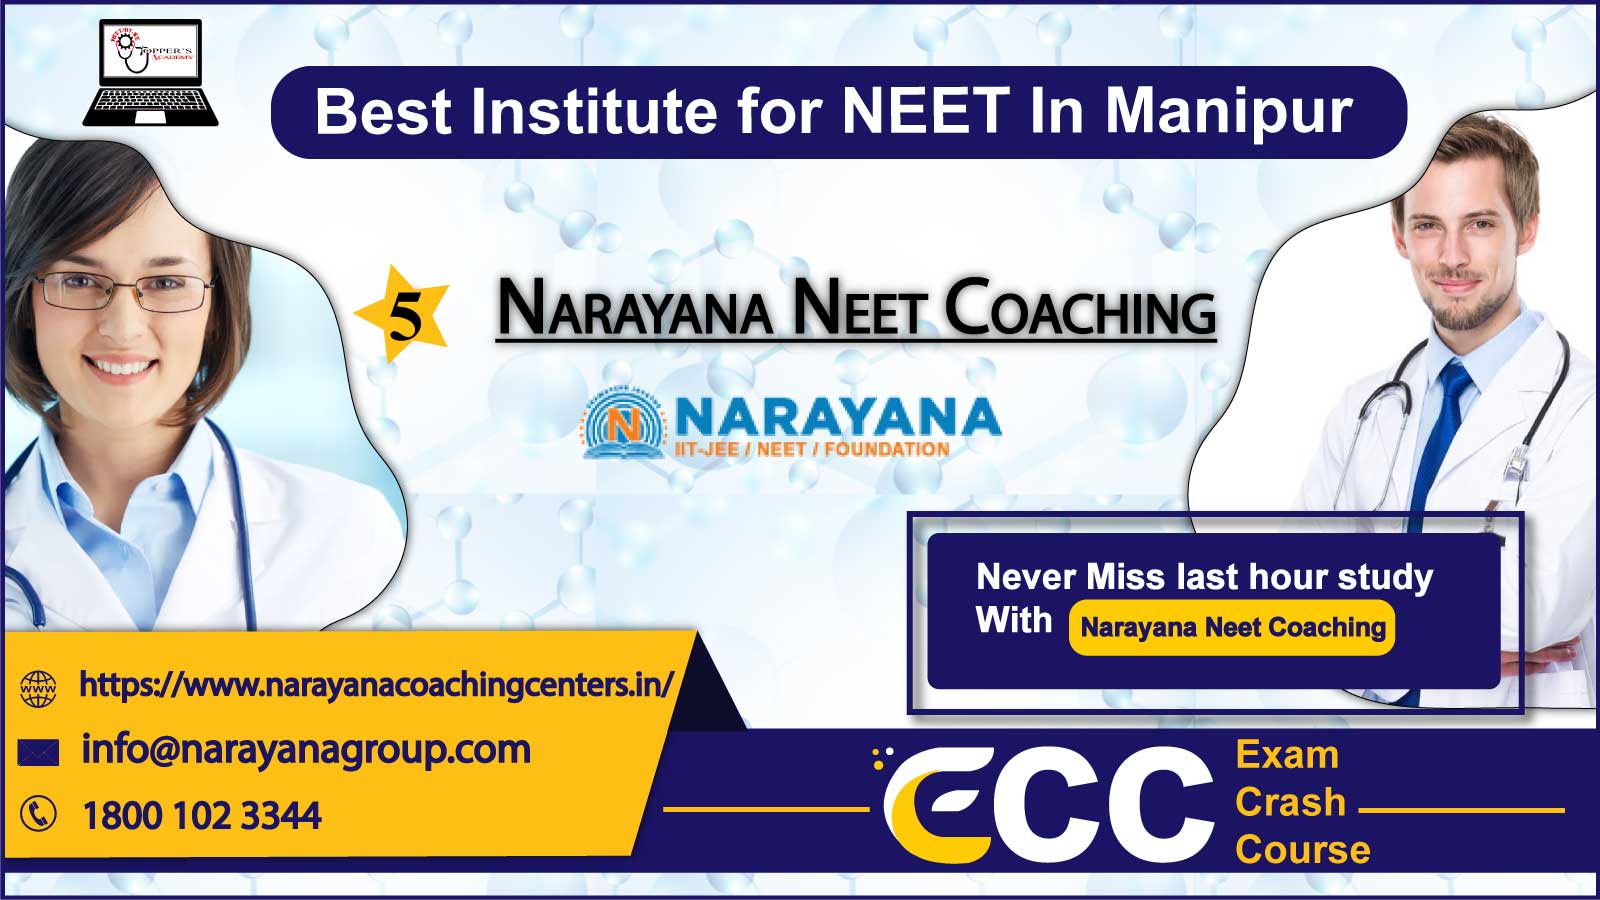 Narayana NEET Coaching in Manipur